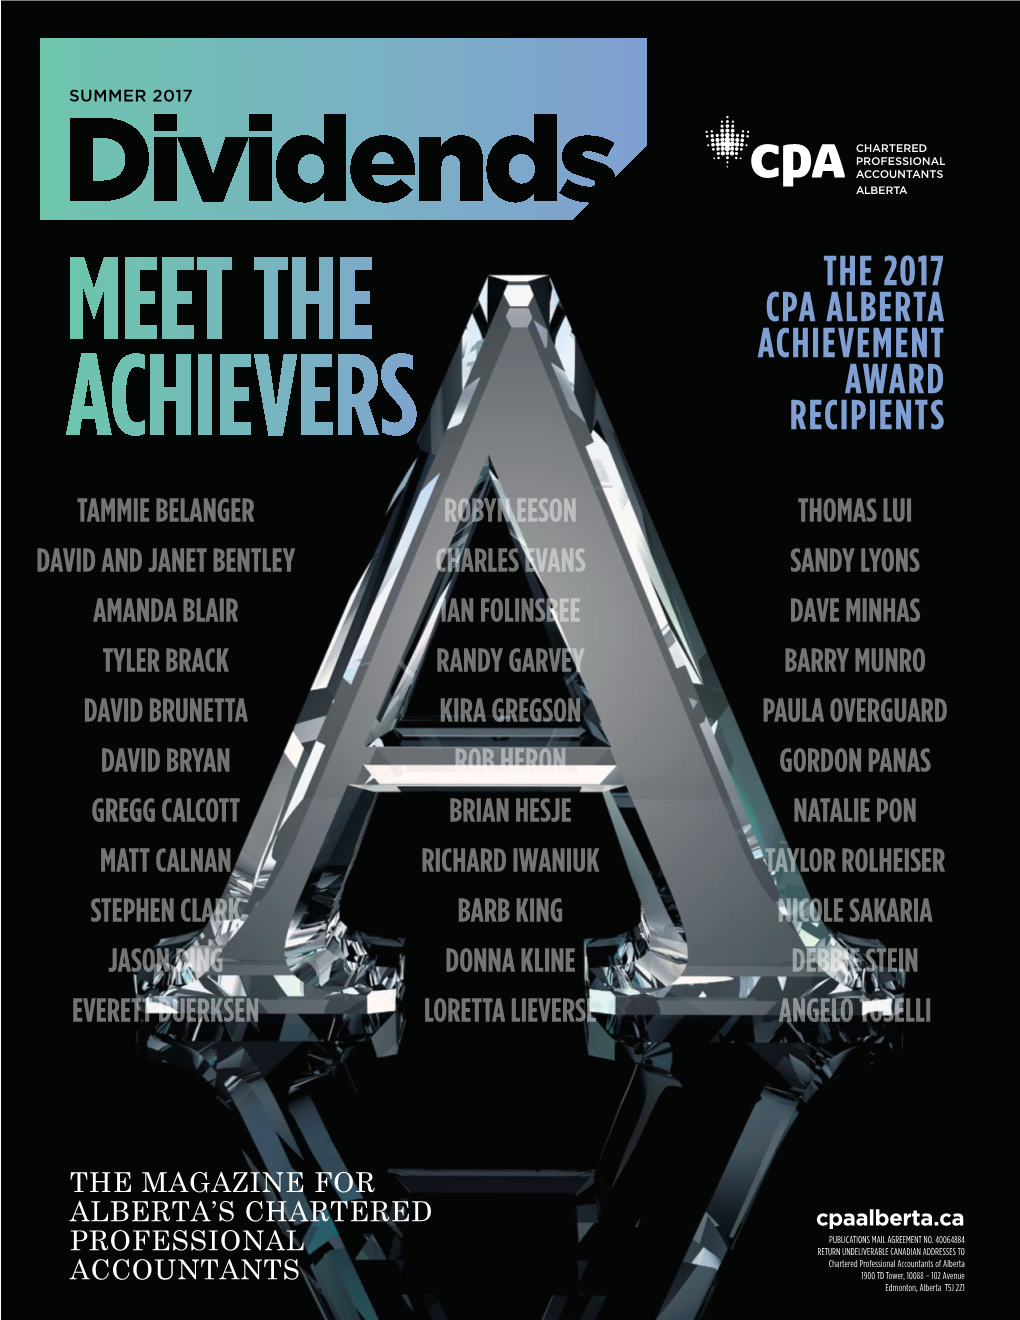 The 2017 CPA Alberta Achievement Award Recipients